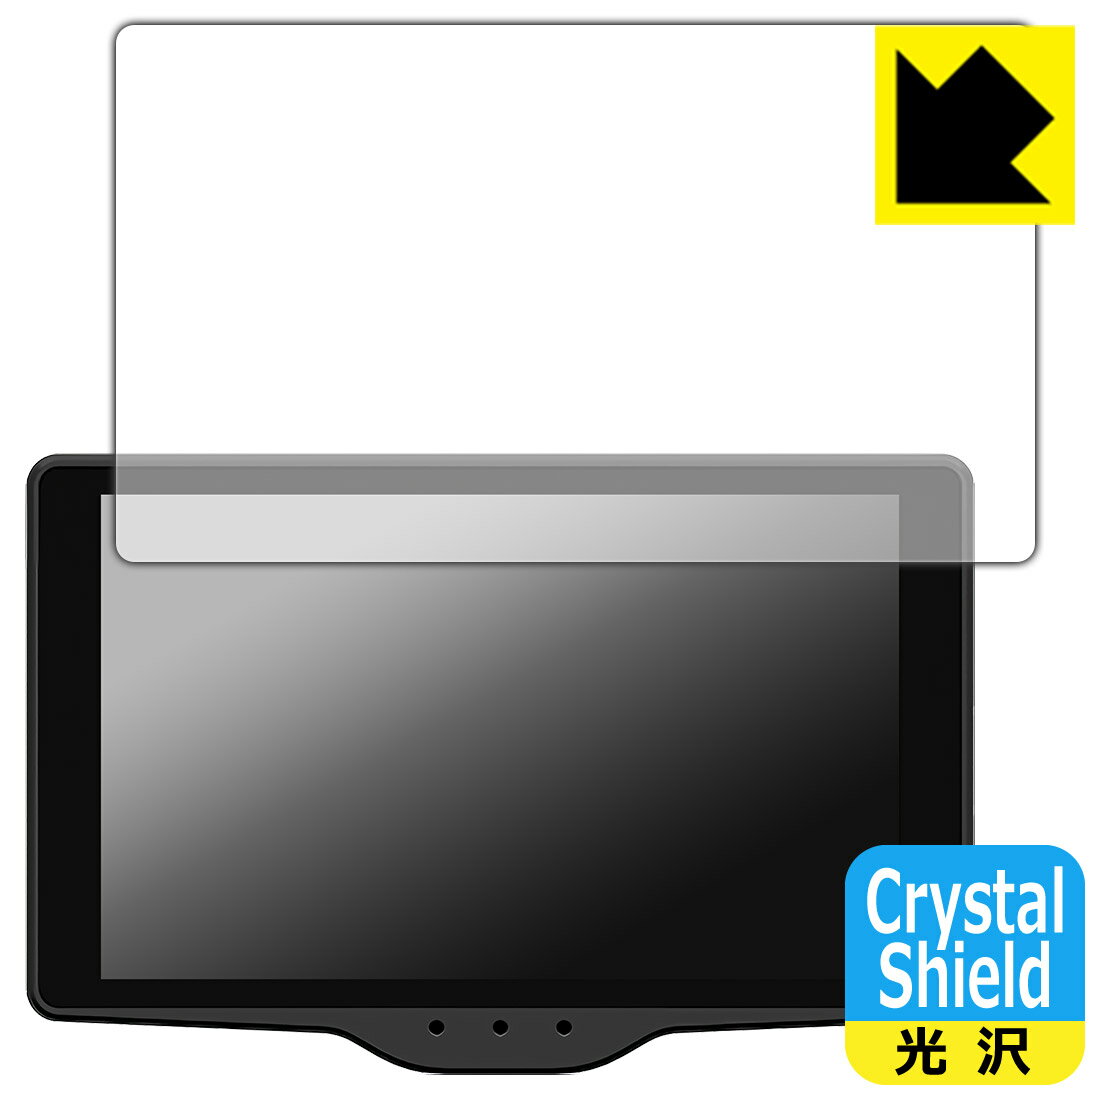 Crystal Shield レーザー&レーダー探知機 霧島レイモデル Lei03/Lei03+/Lei04/Lei05/Lei06 日本製 自社製造直販